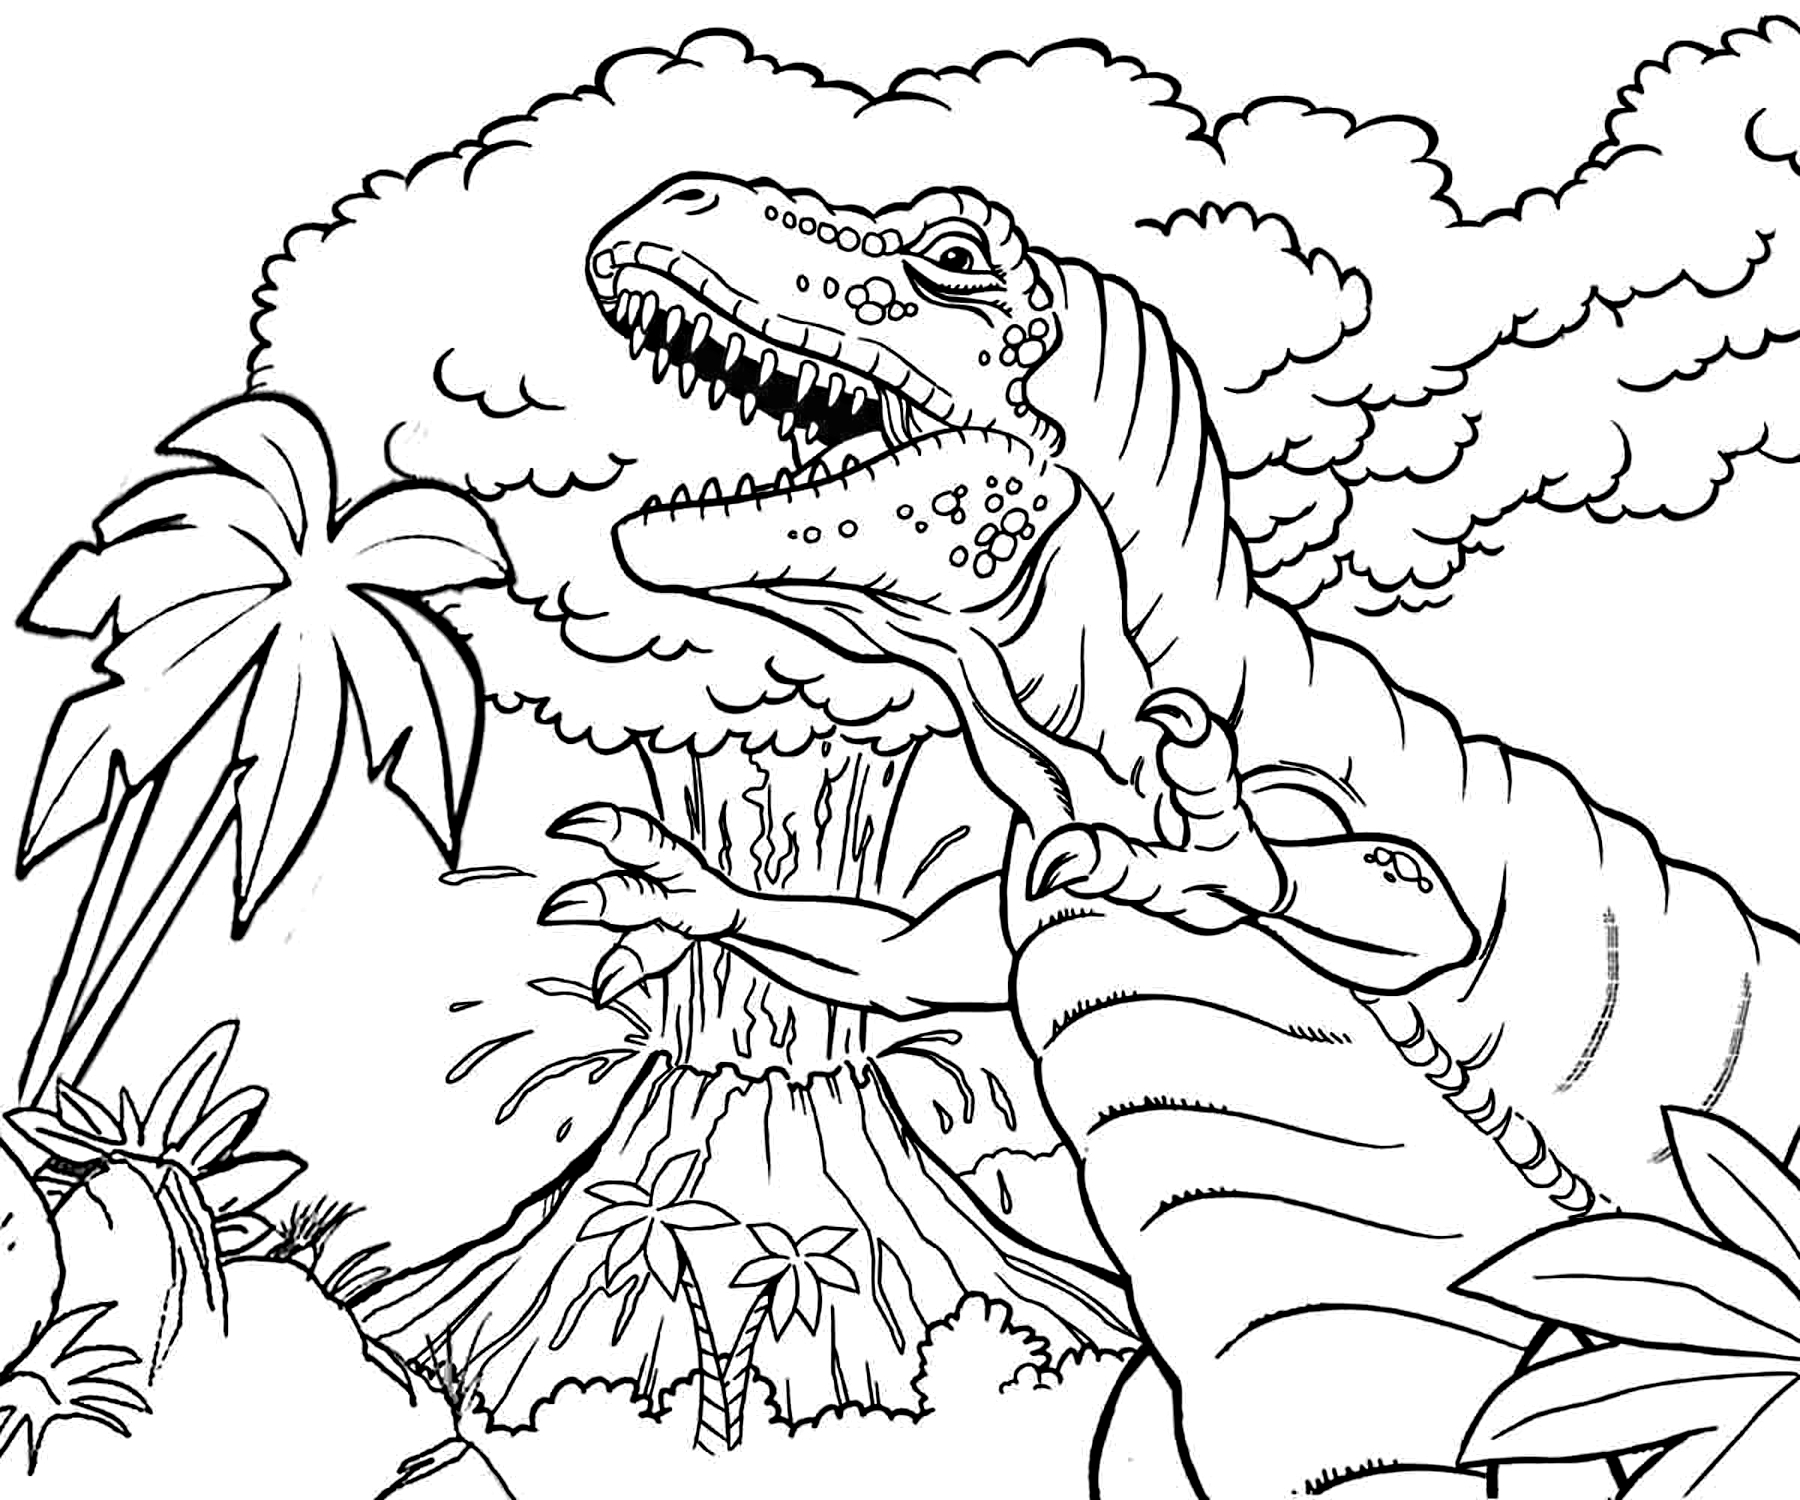 Раскраски динозавры формат а4. Тирекс раскраска парк Юрского периода. Раскраска динозавры мир Юрского периода. Динозавры / раскраска. Раскраски для мальчиков динозавры.